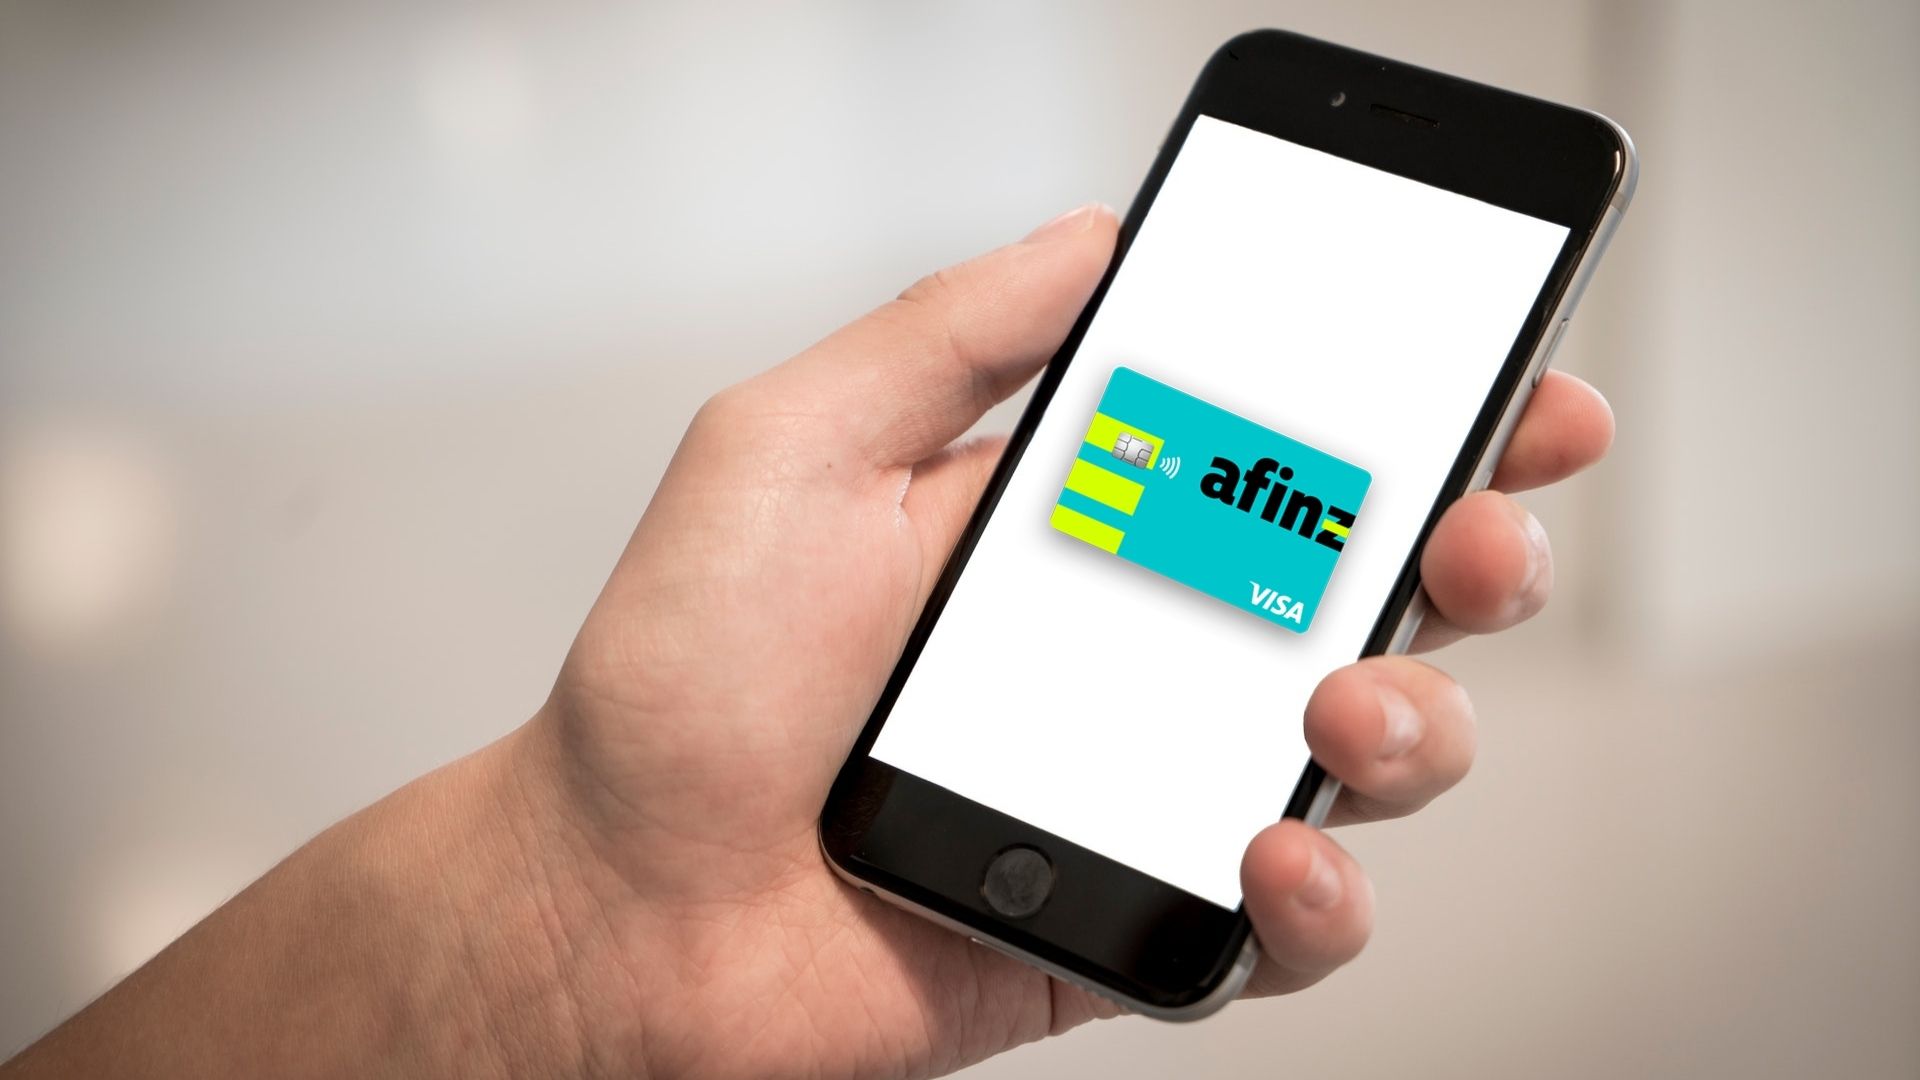 Consulte a fatura do seu cartão pelo aplicativo Afinz. Fonte: Pexels | Afinz.